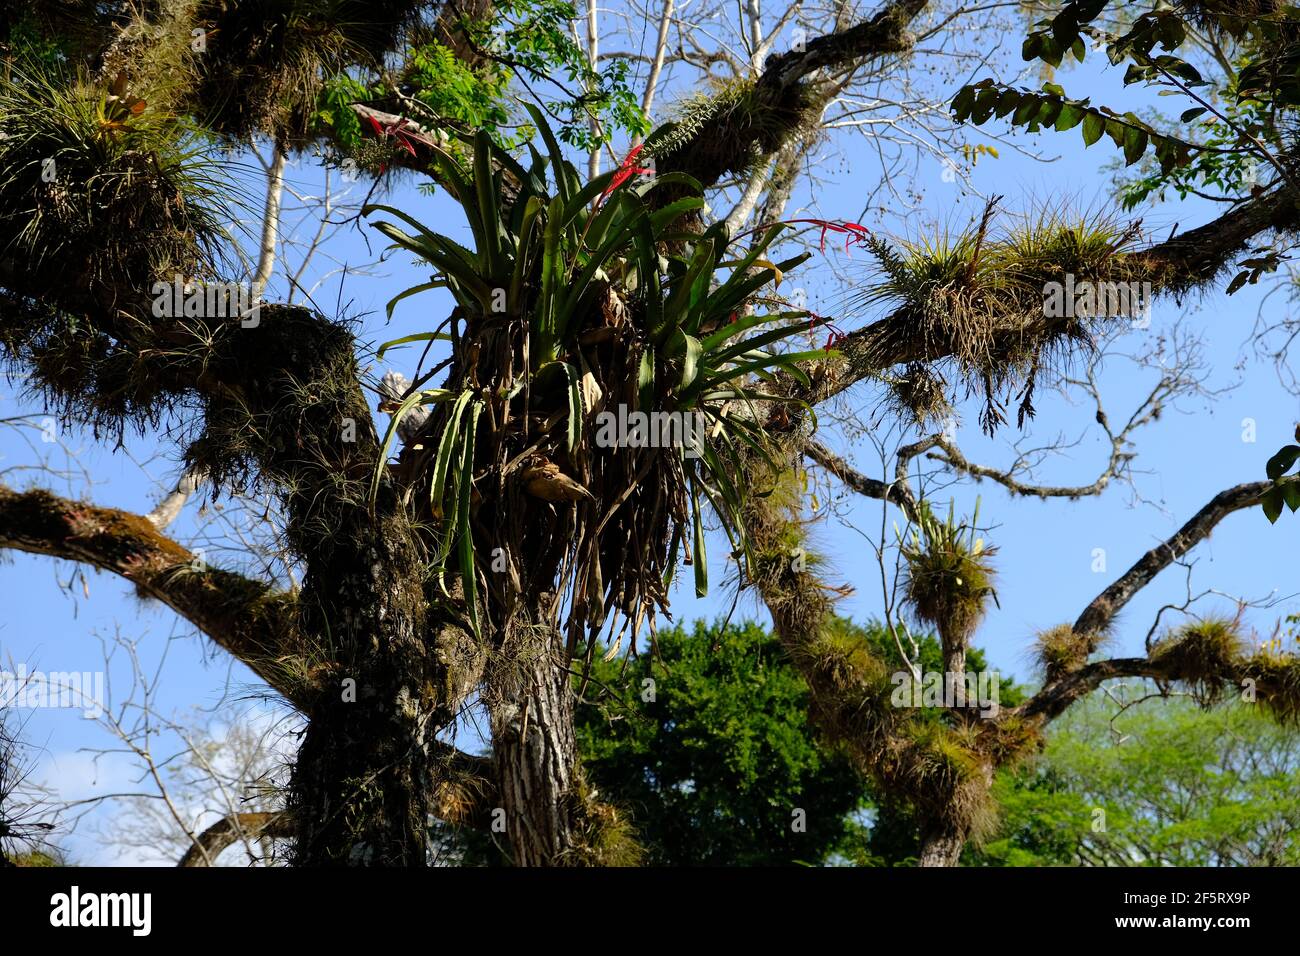 Honduras Copan Ruinas - orchidées arboricoles dans les ruines de Copan Banque D'Images